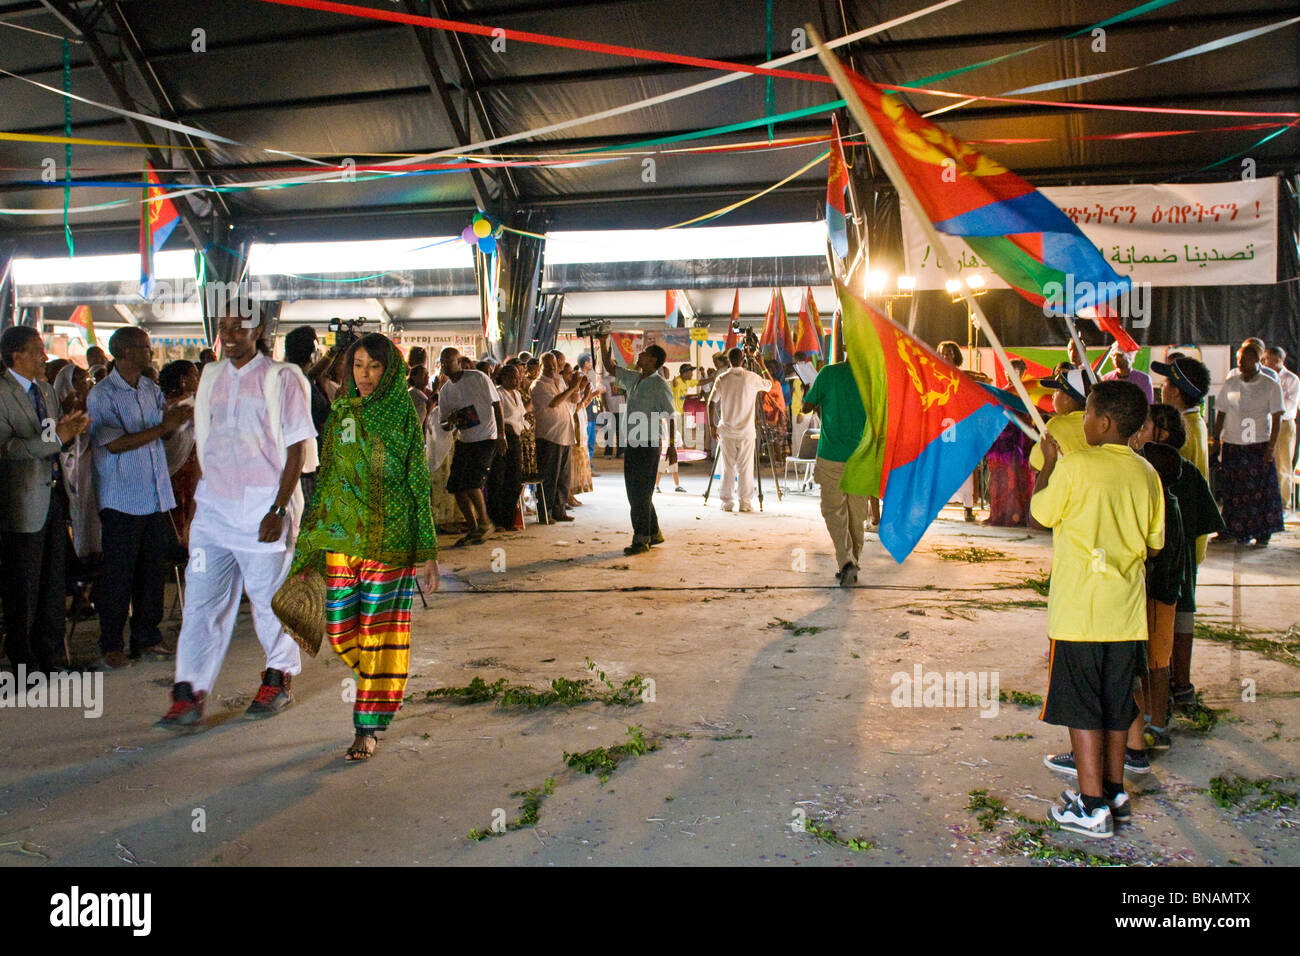 Festival das eritreische Volk in Italien, Cinisello Balsamo, Provinz Mailand, 10.07.2010 Stockfoto